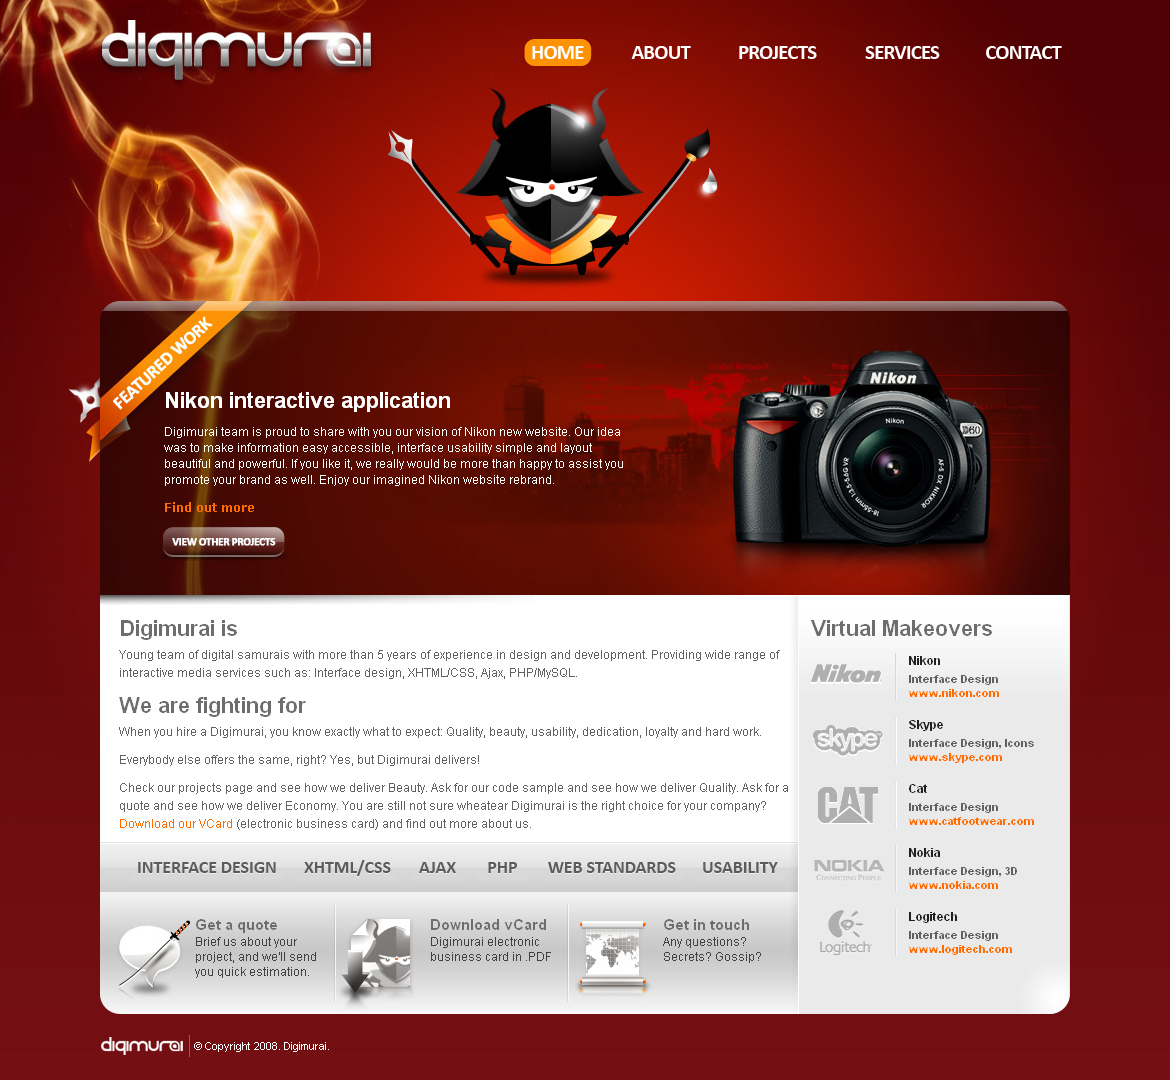 Digimurai website in 2008